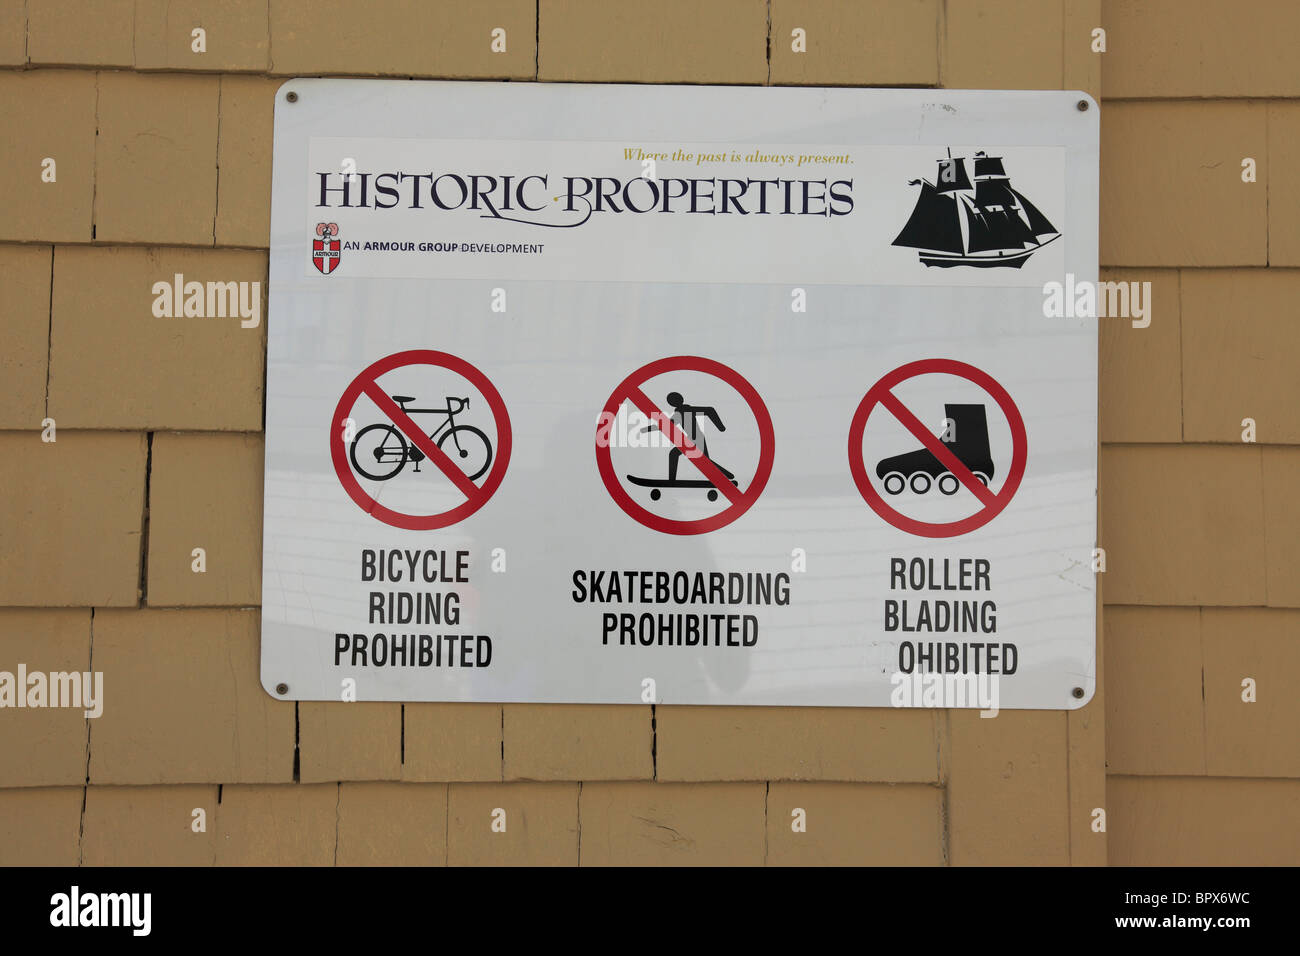 Verbotsschilder auf die historischen Eigenschaften am Atlantischen Harbourwalk, Halifax, Nova Scotia, Canada. Foto: Willy Matheisl Stockfoto